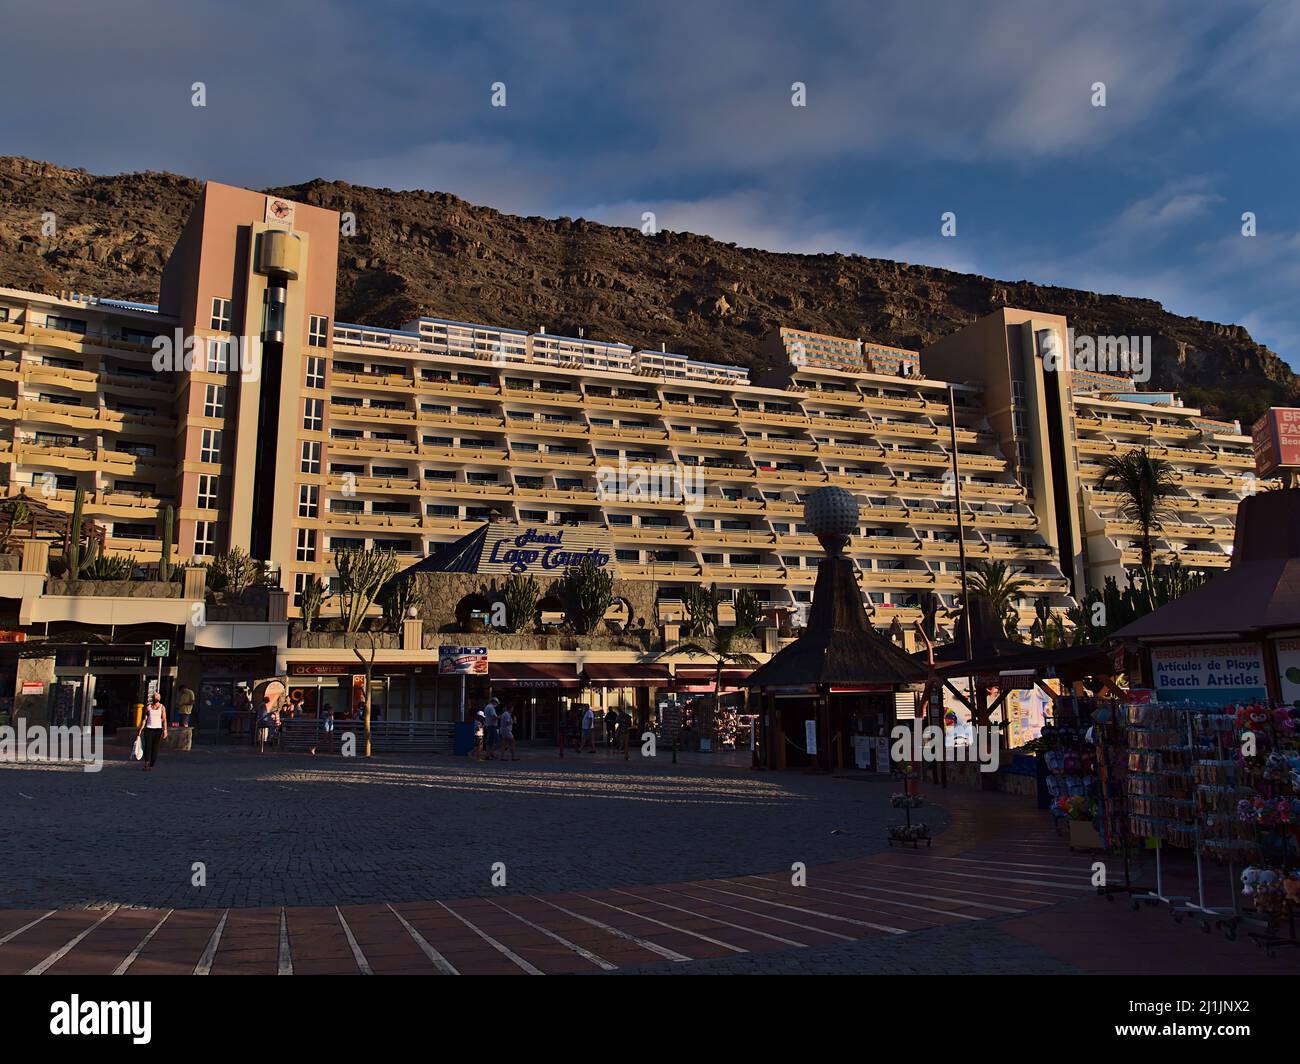 Vista frontale del popolare Hotel Paradise Lago Taurito situato in una valle nel sud di Gran Canaria, Spagna in serata con negozi e persone a piedi. Foto Stock